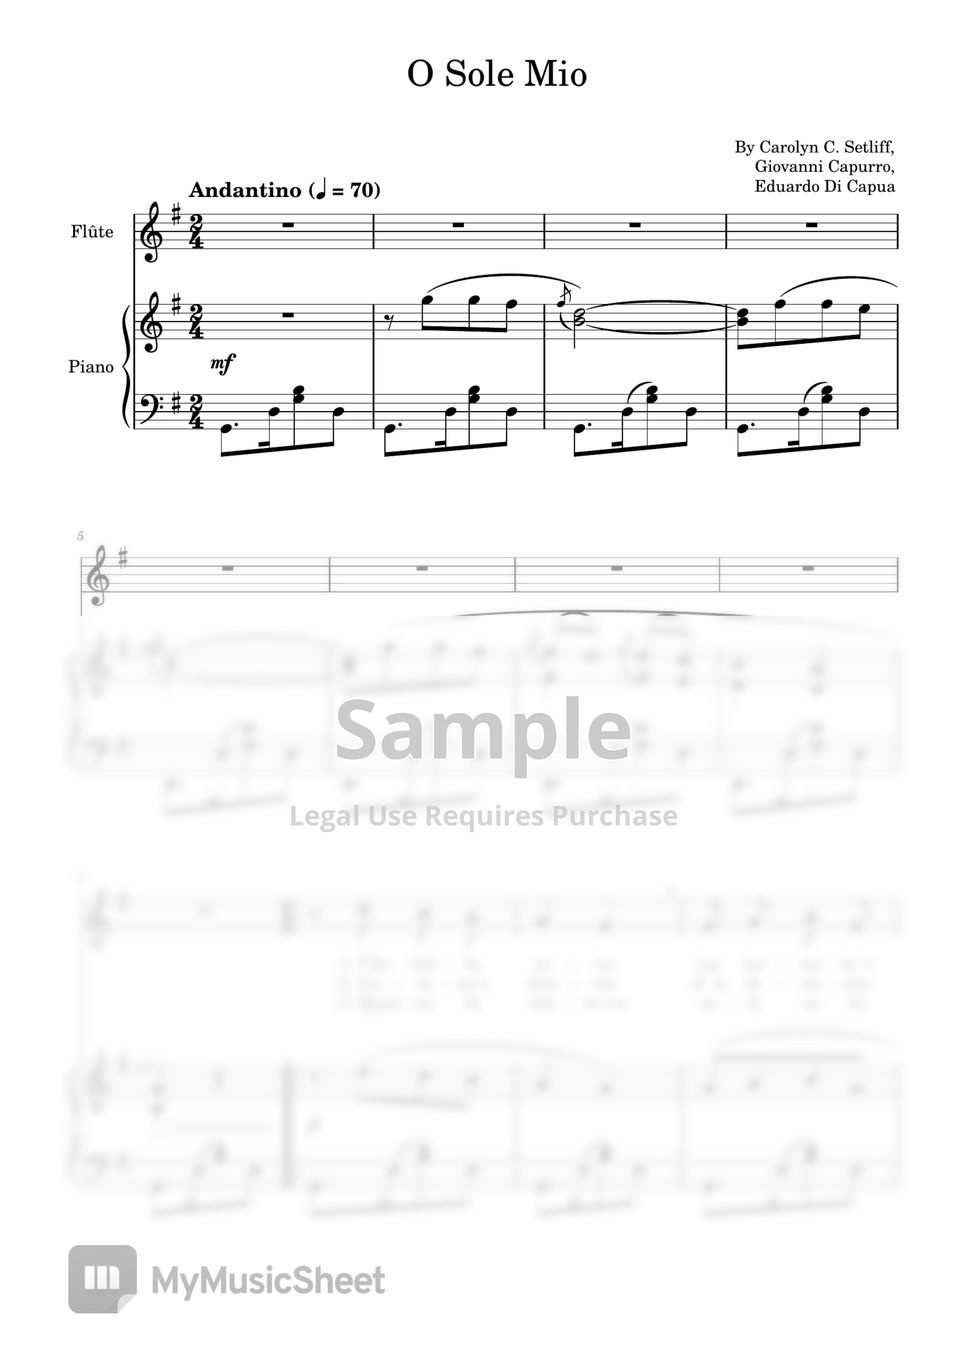 Carolyn C. Setliff, Giovanni Capurro, Eduardo Di Capua - O sole mio (Eduardo Di Capua,For Piano Accompaniment) by poon